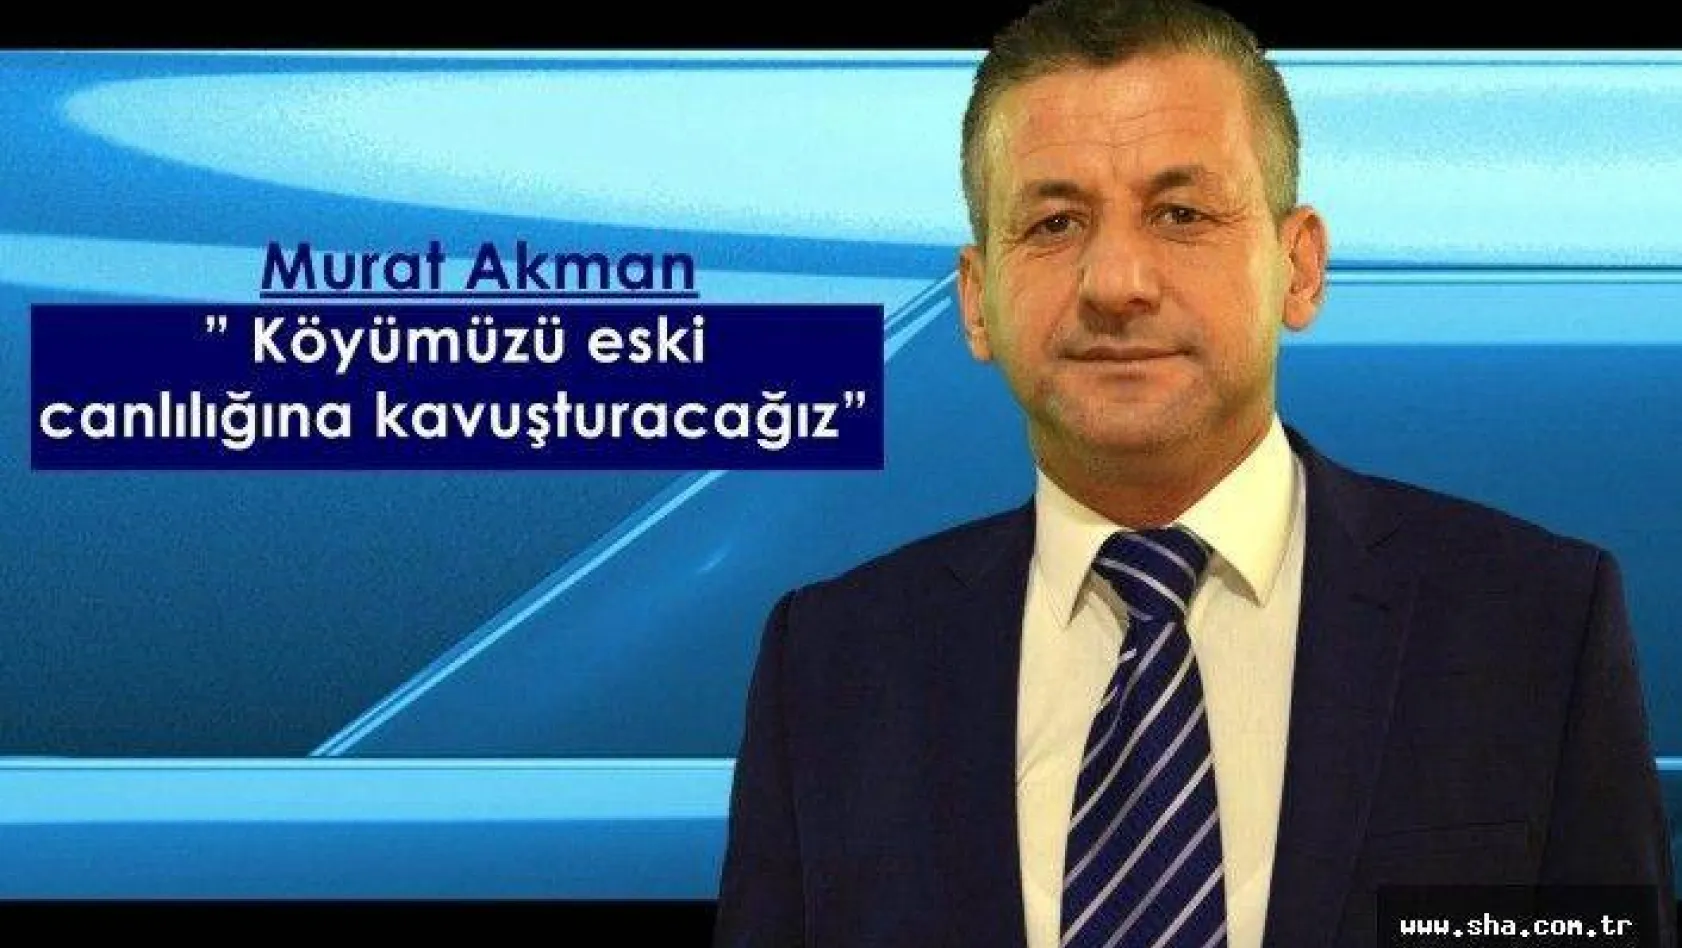 Akman' Köyümüzü eski canlılığına kavuşturacağız'